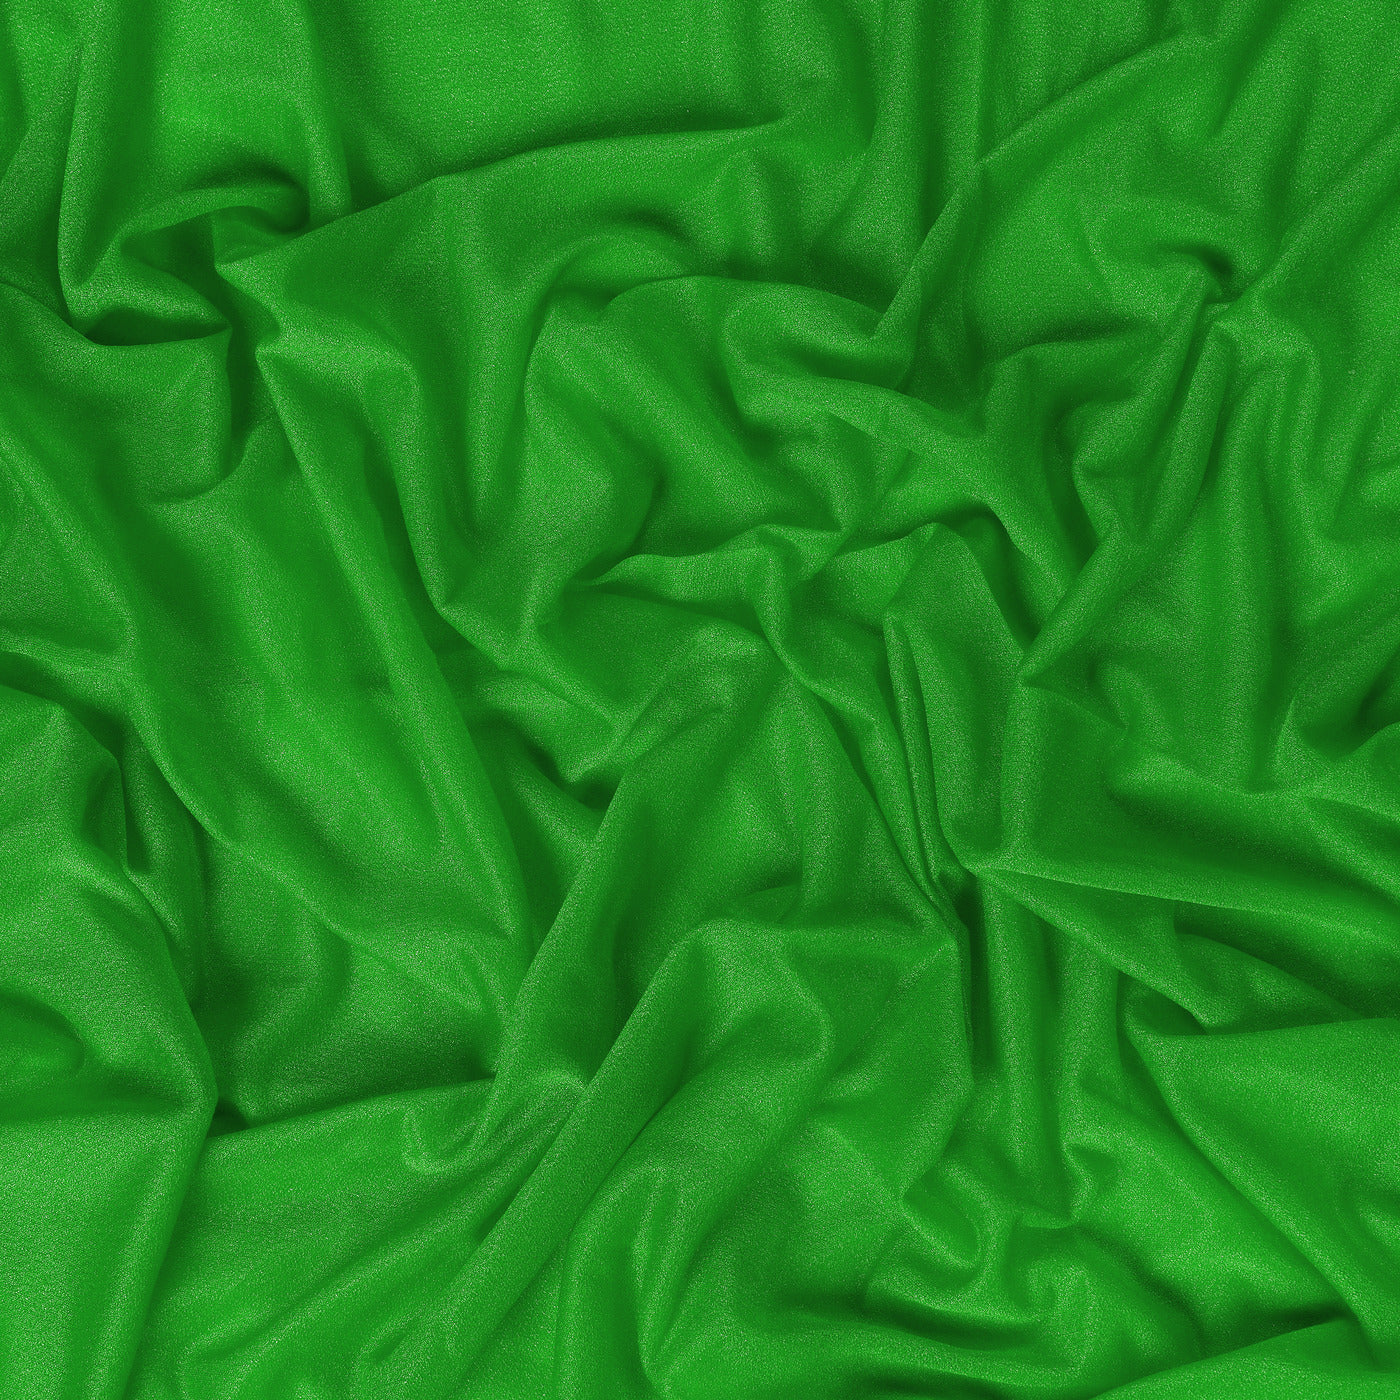 Green,bd4a66d0-070c-4cd4-9251-0d08e842385c